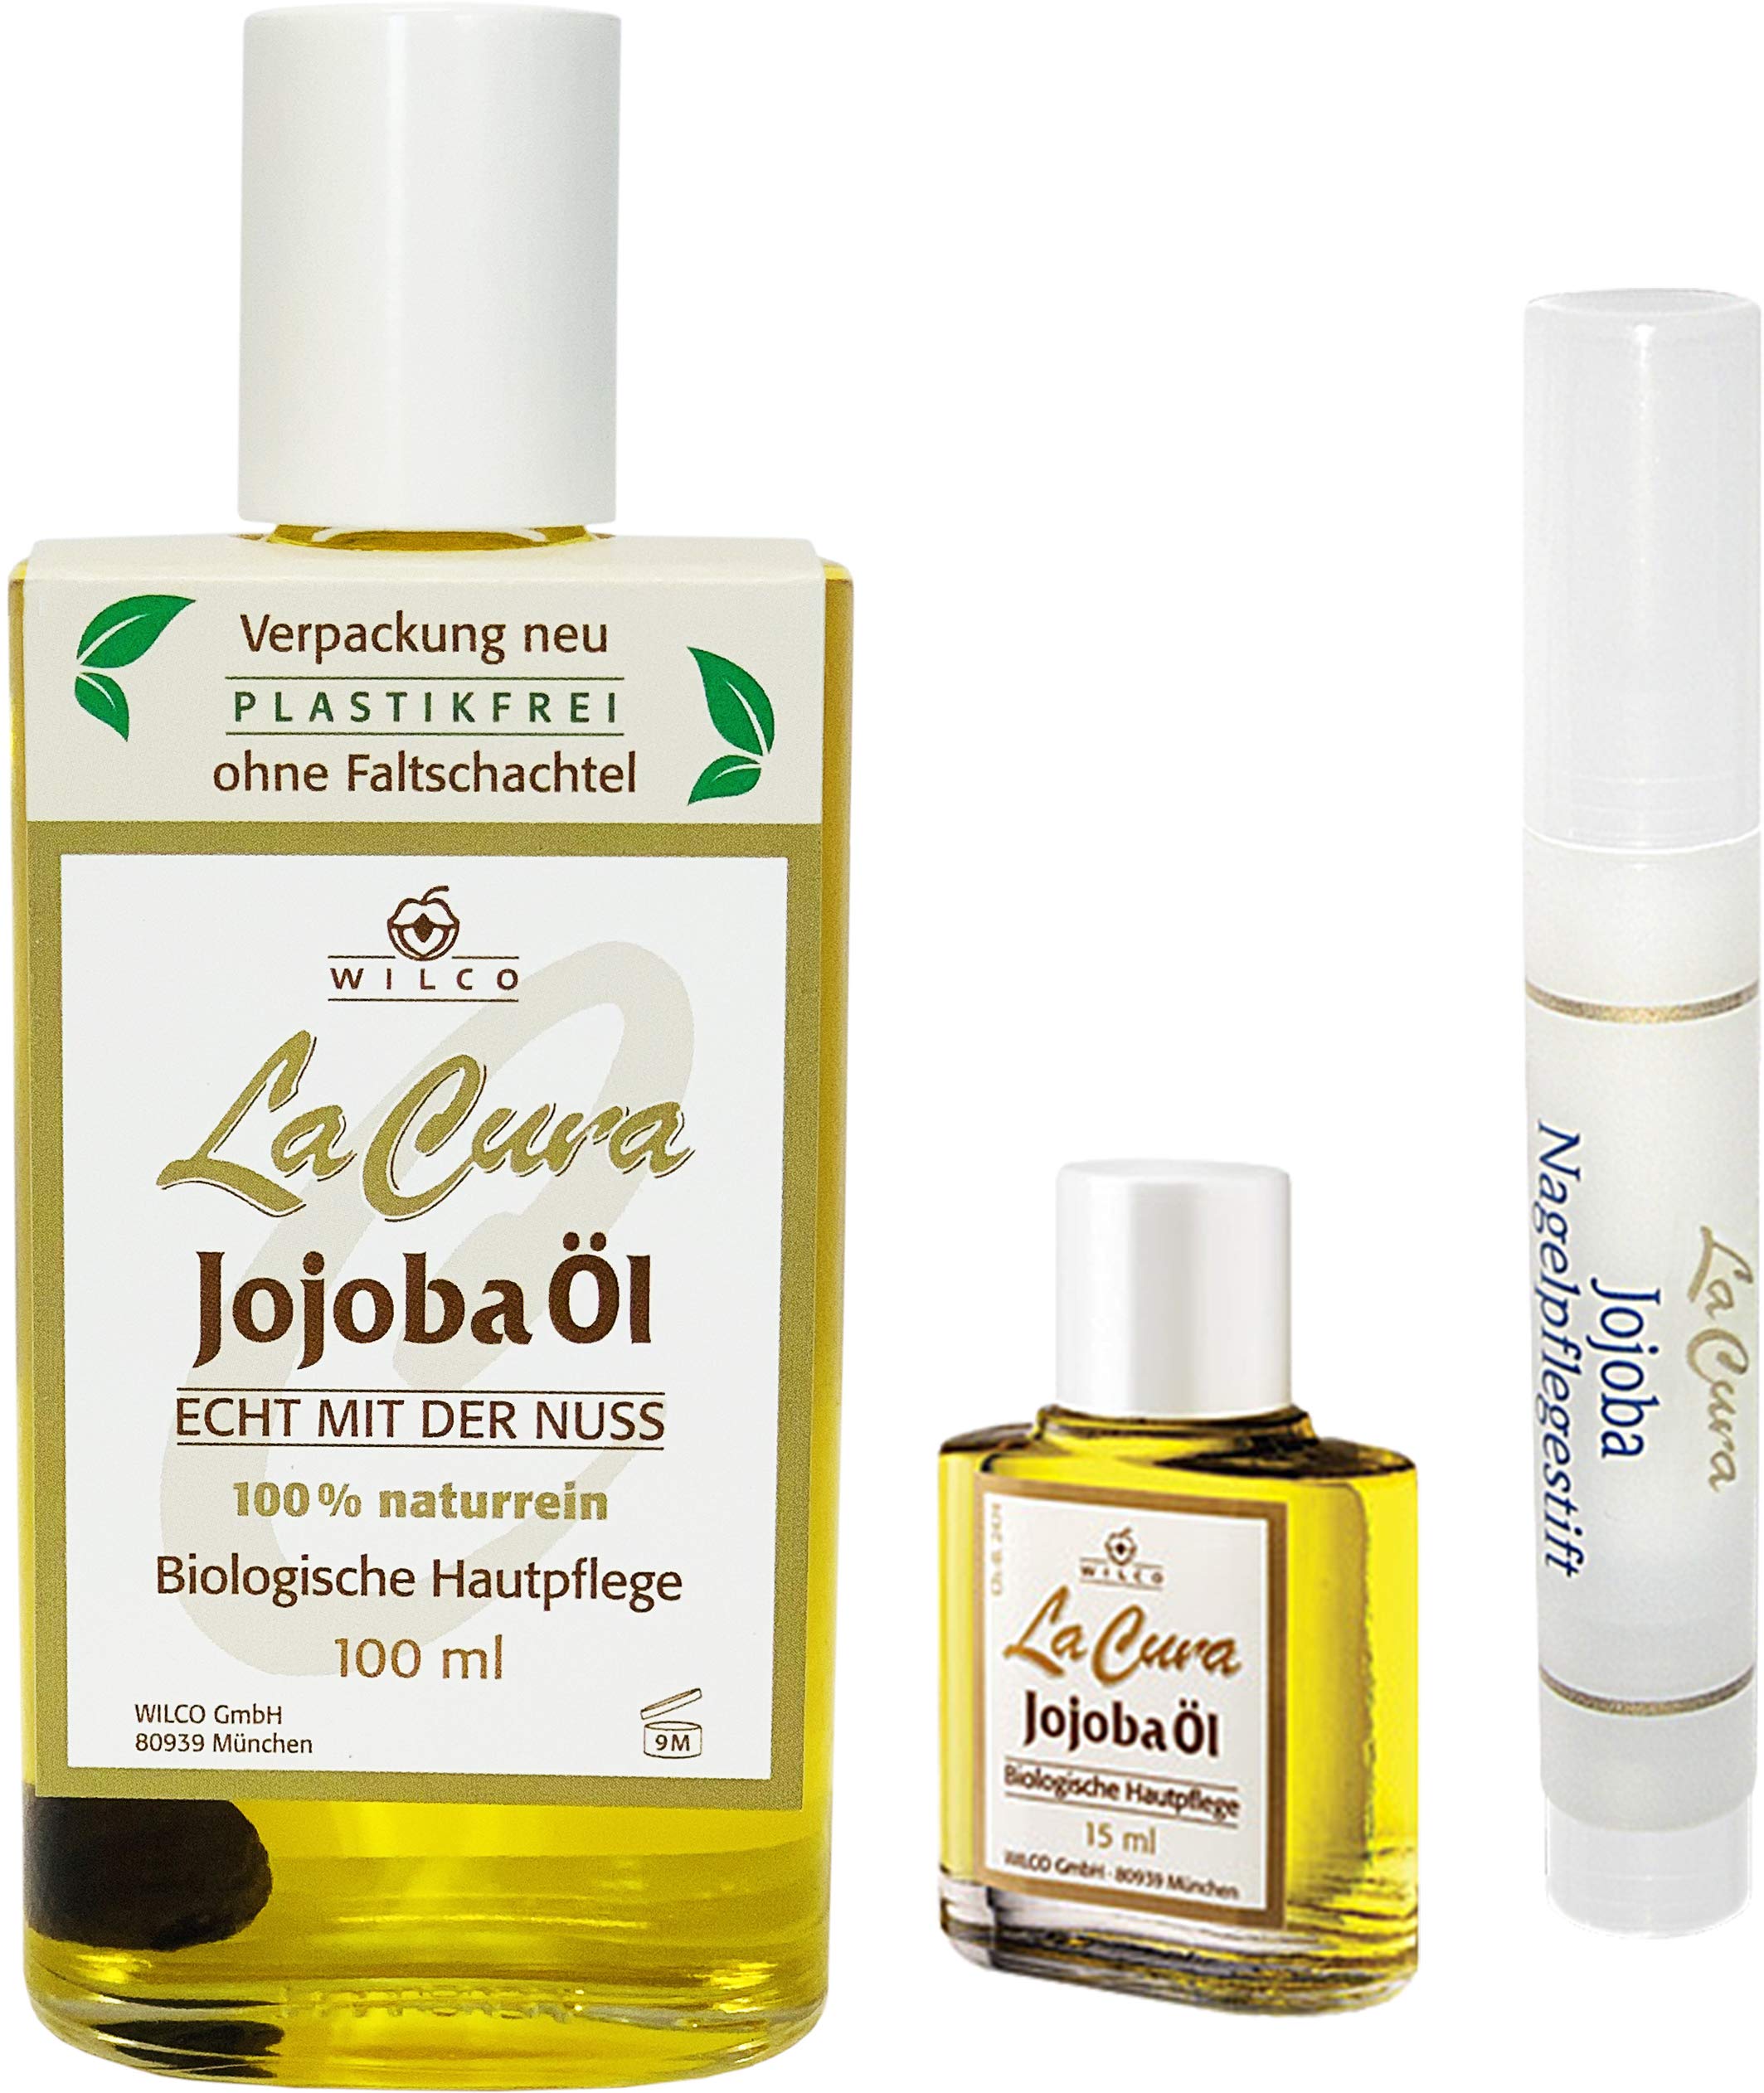 Drei Schönheits-Elixiere in einem Set! La Cura Jojoba Öl 100ml, La Cura Jojoba Öl 15 ml und der La Cura Nagelpflegestift für gepflegte, schöne Nägel.